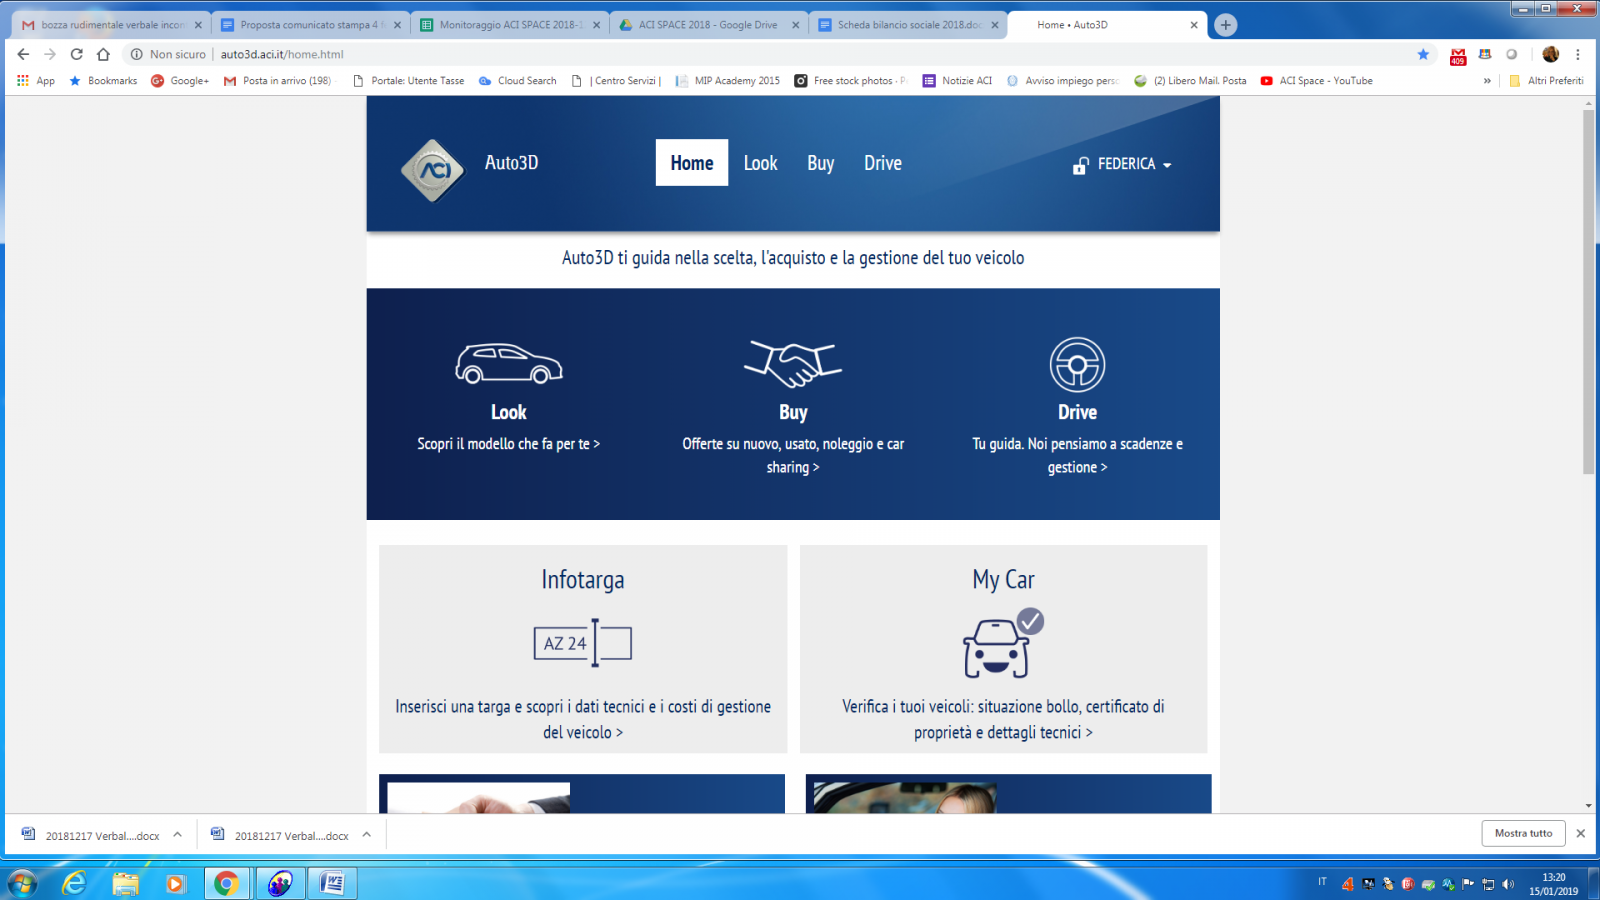 La nuova piattaforma web dell'Aci dà informazioni utili sull'assistenza al tuo veicolo